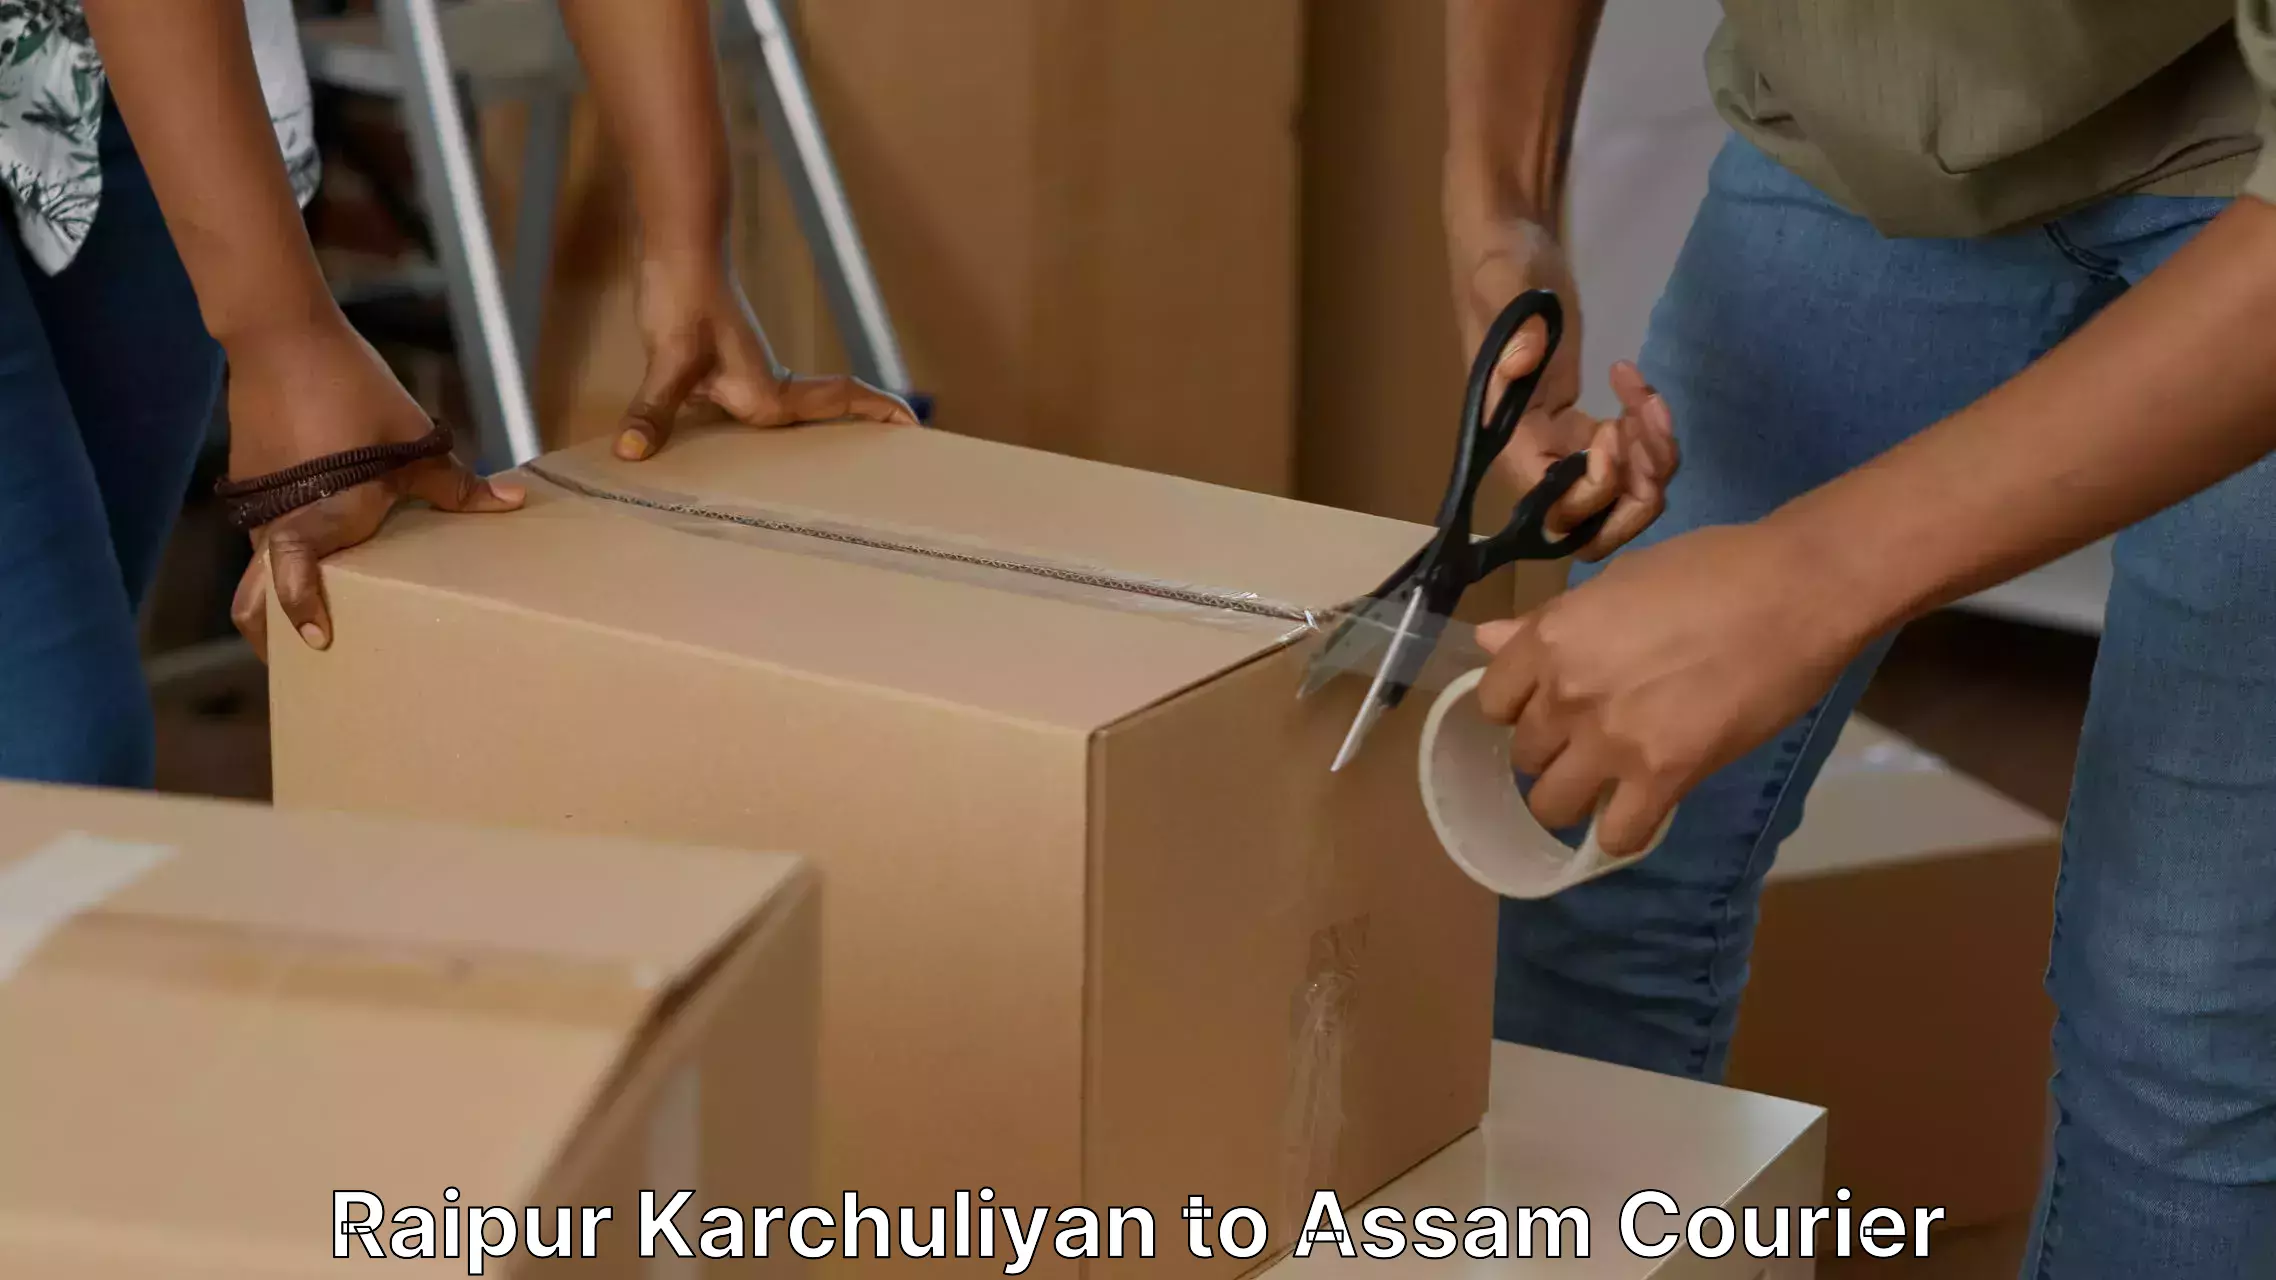 Dependable household movers Raipur Karchuliyan to Nagaon